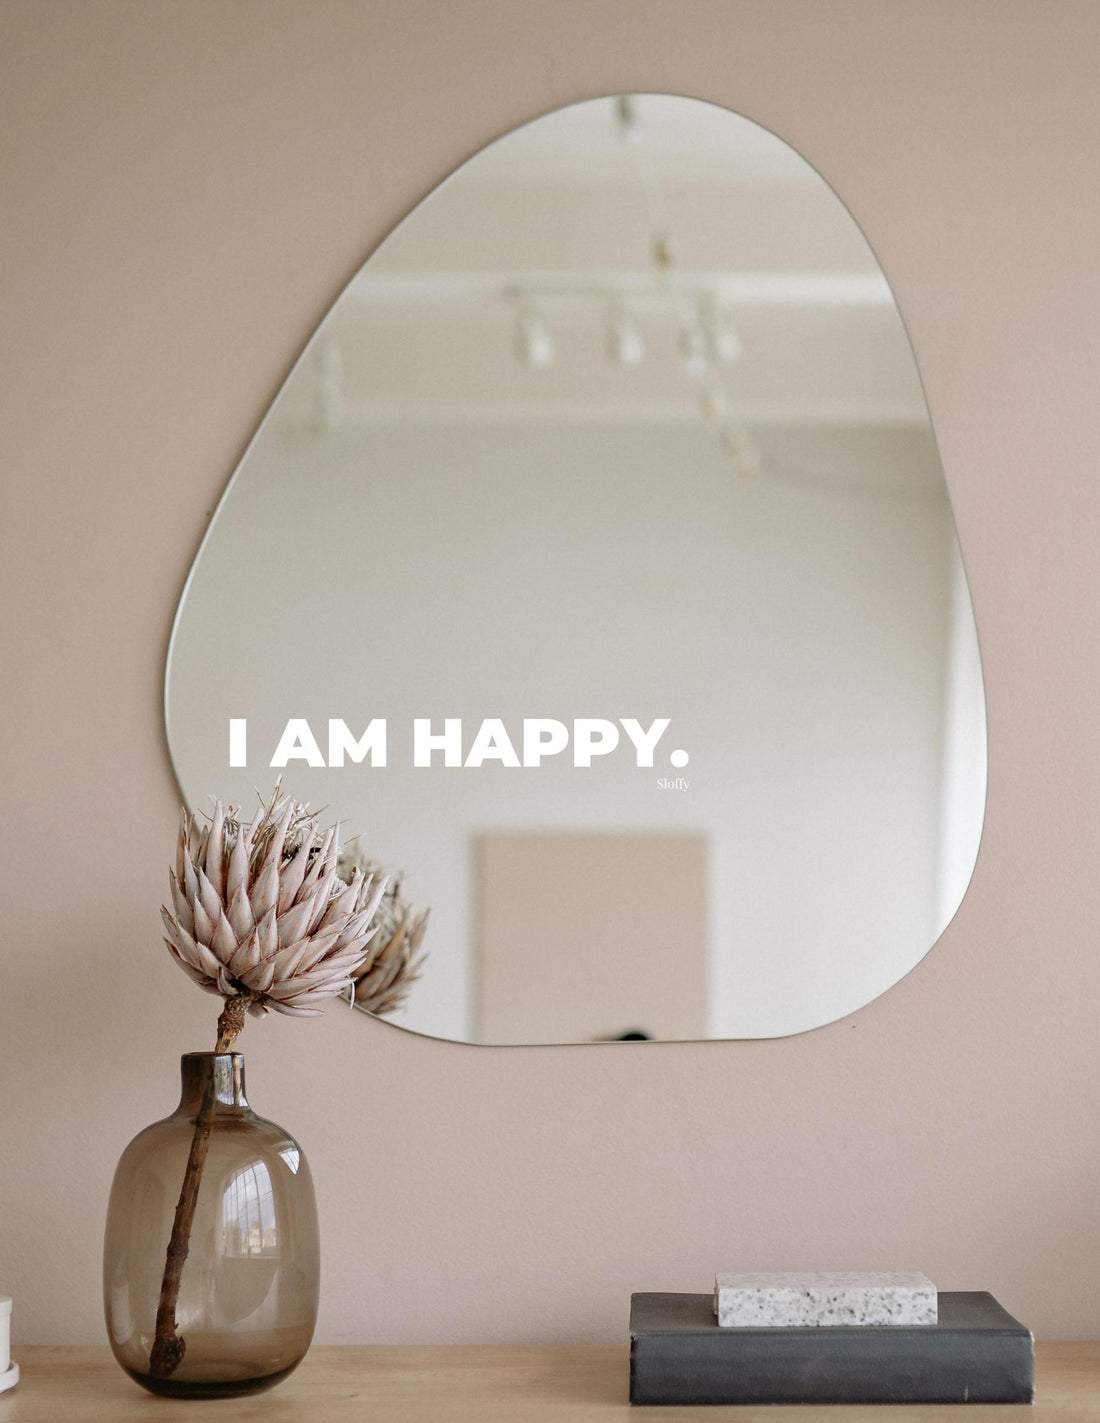 I am Happy. - Adesivo affermazione positiva